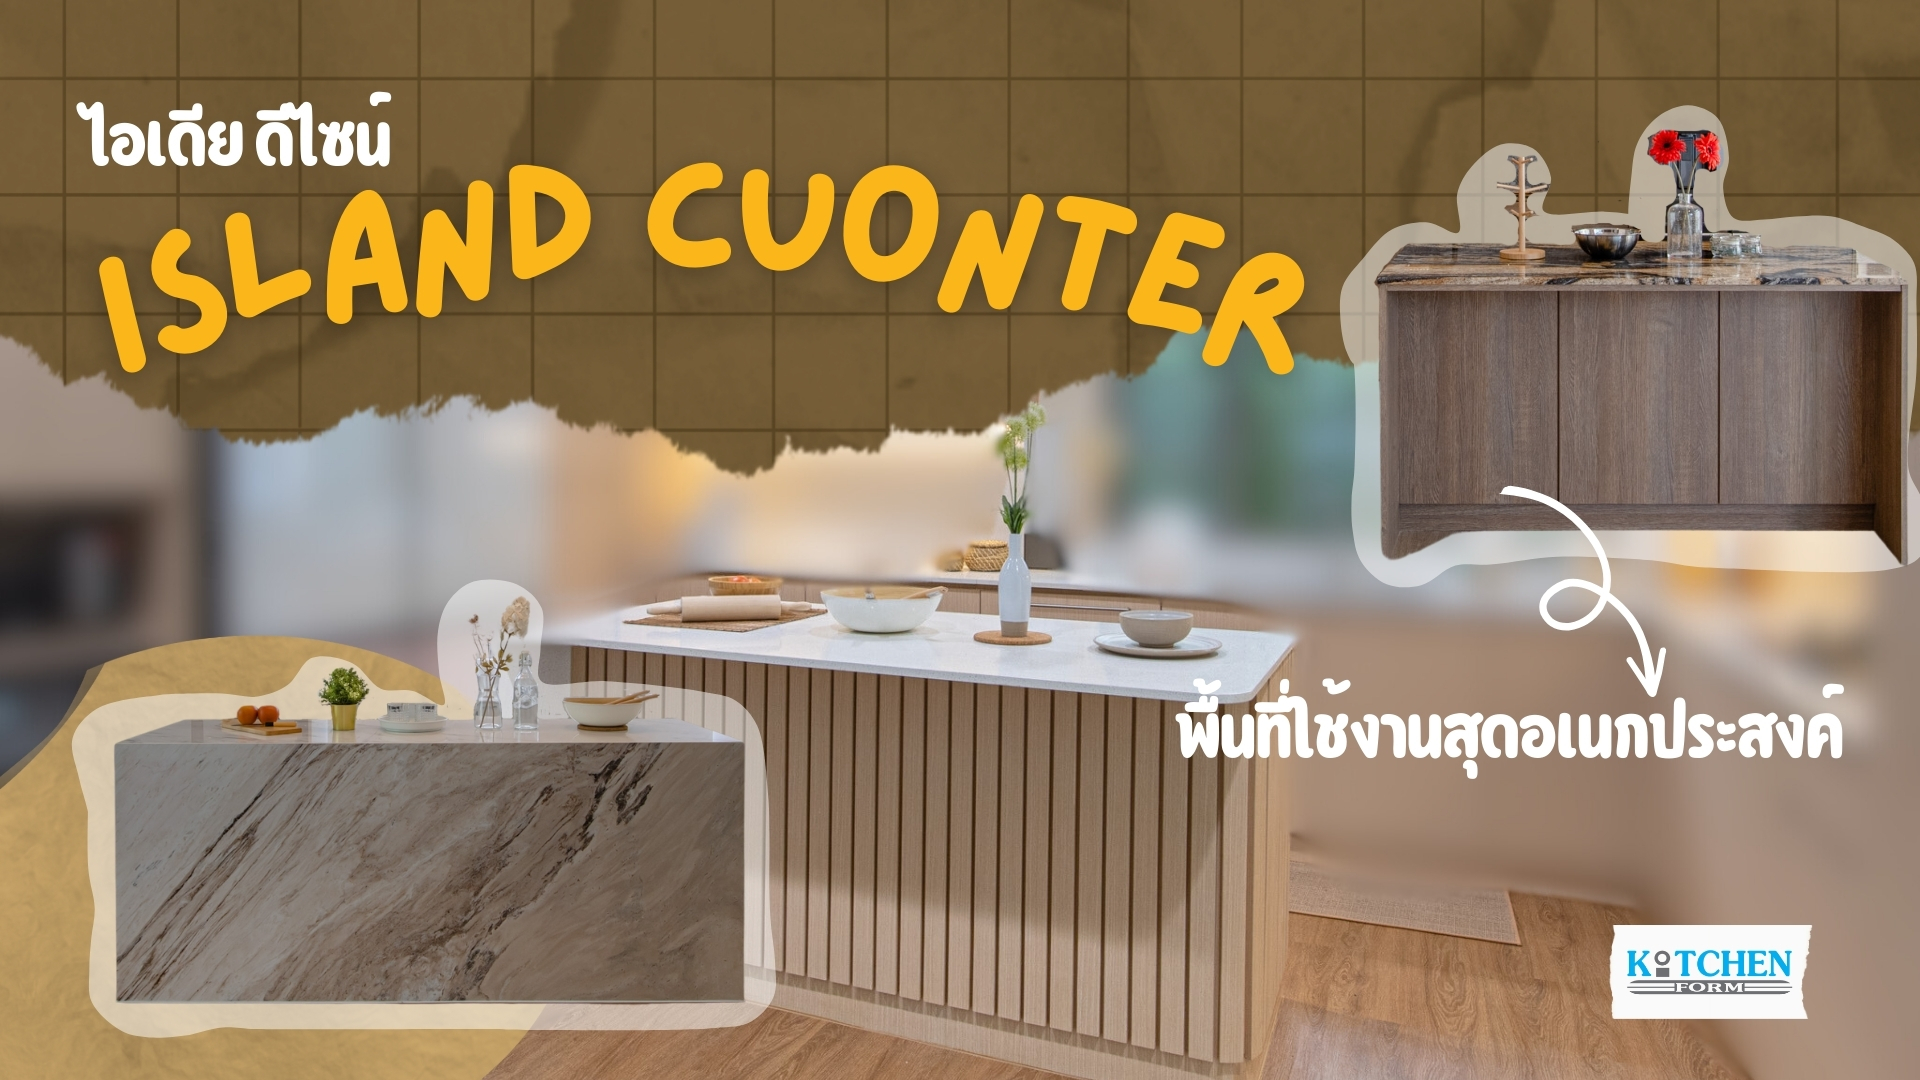 ไอเดีย ดีไซน์ “Island Counter” พื้นที่ใช้งานสุดอเนกประสงค์, เคาน์เตอร์ไอส์แลนด์, โต๊ะไอส์แลนด์, โต๊ะกลางห้องครัว, Island counter, คิทเช่นฟอร์ม, ไอเดีย, ตกแต่งชุดครัว,